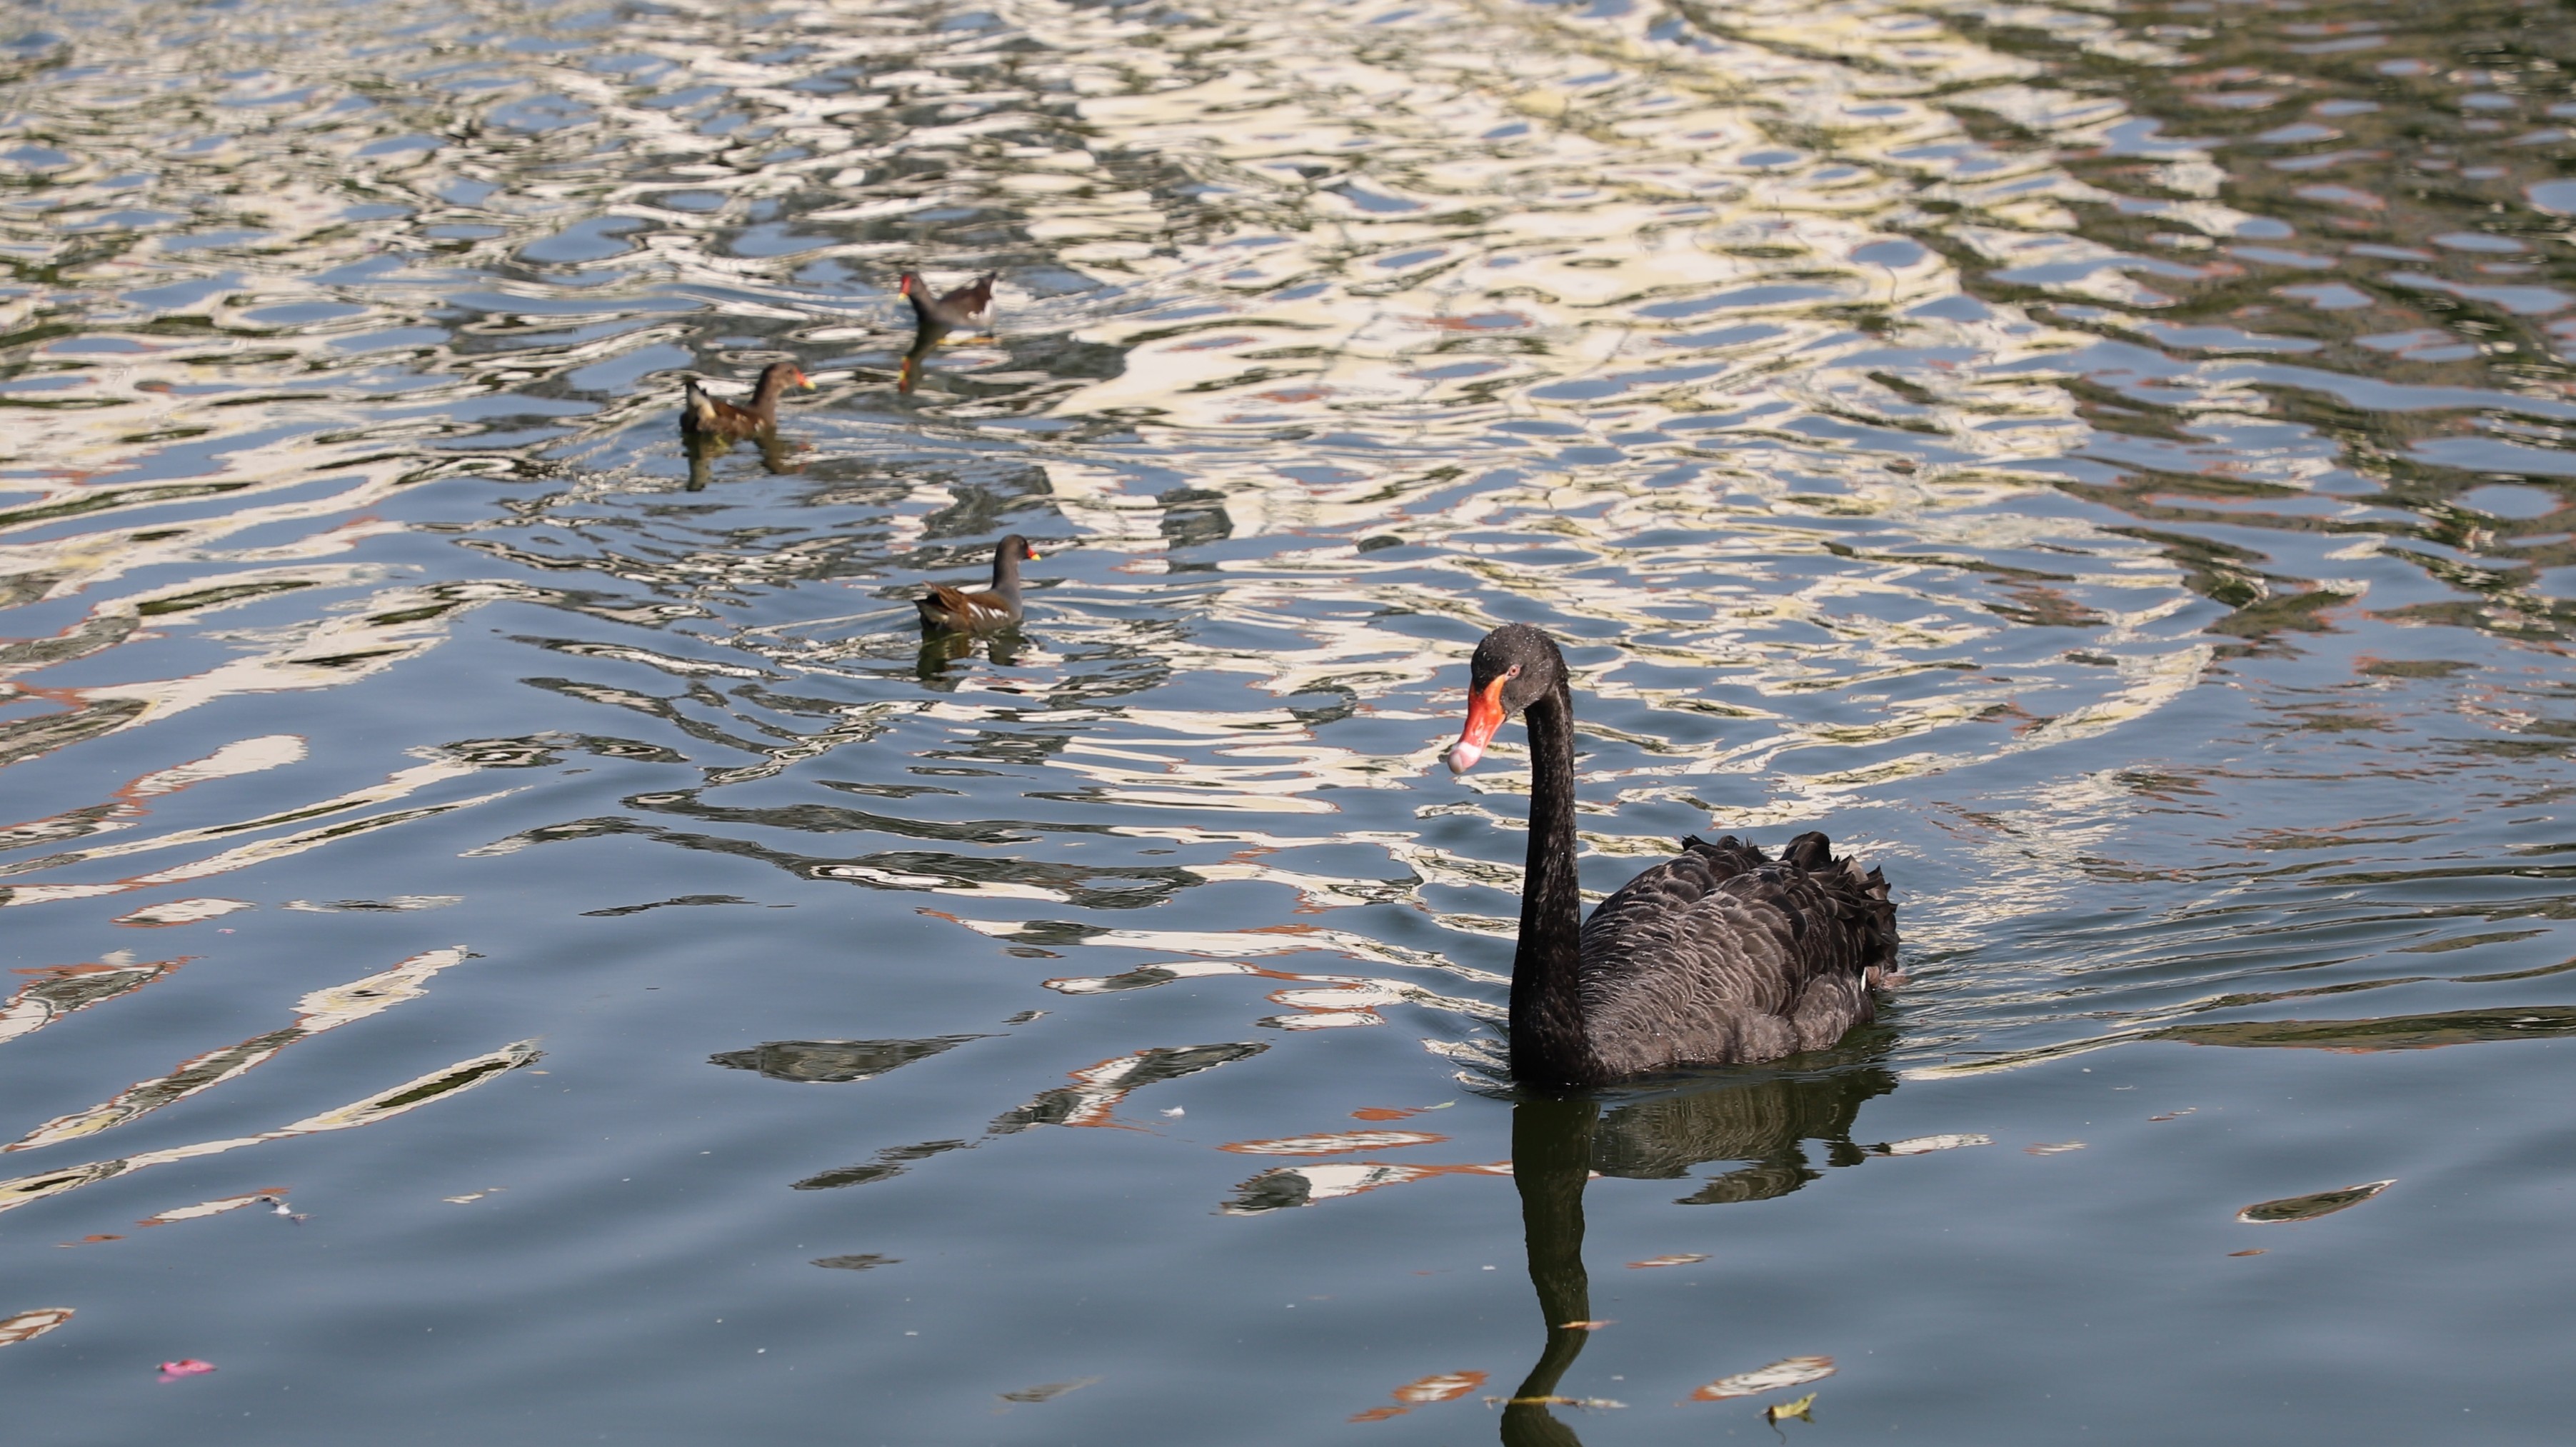 廣州動物園湖面上悠然自得的天鵝。劉盈華攝